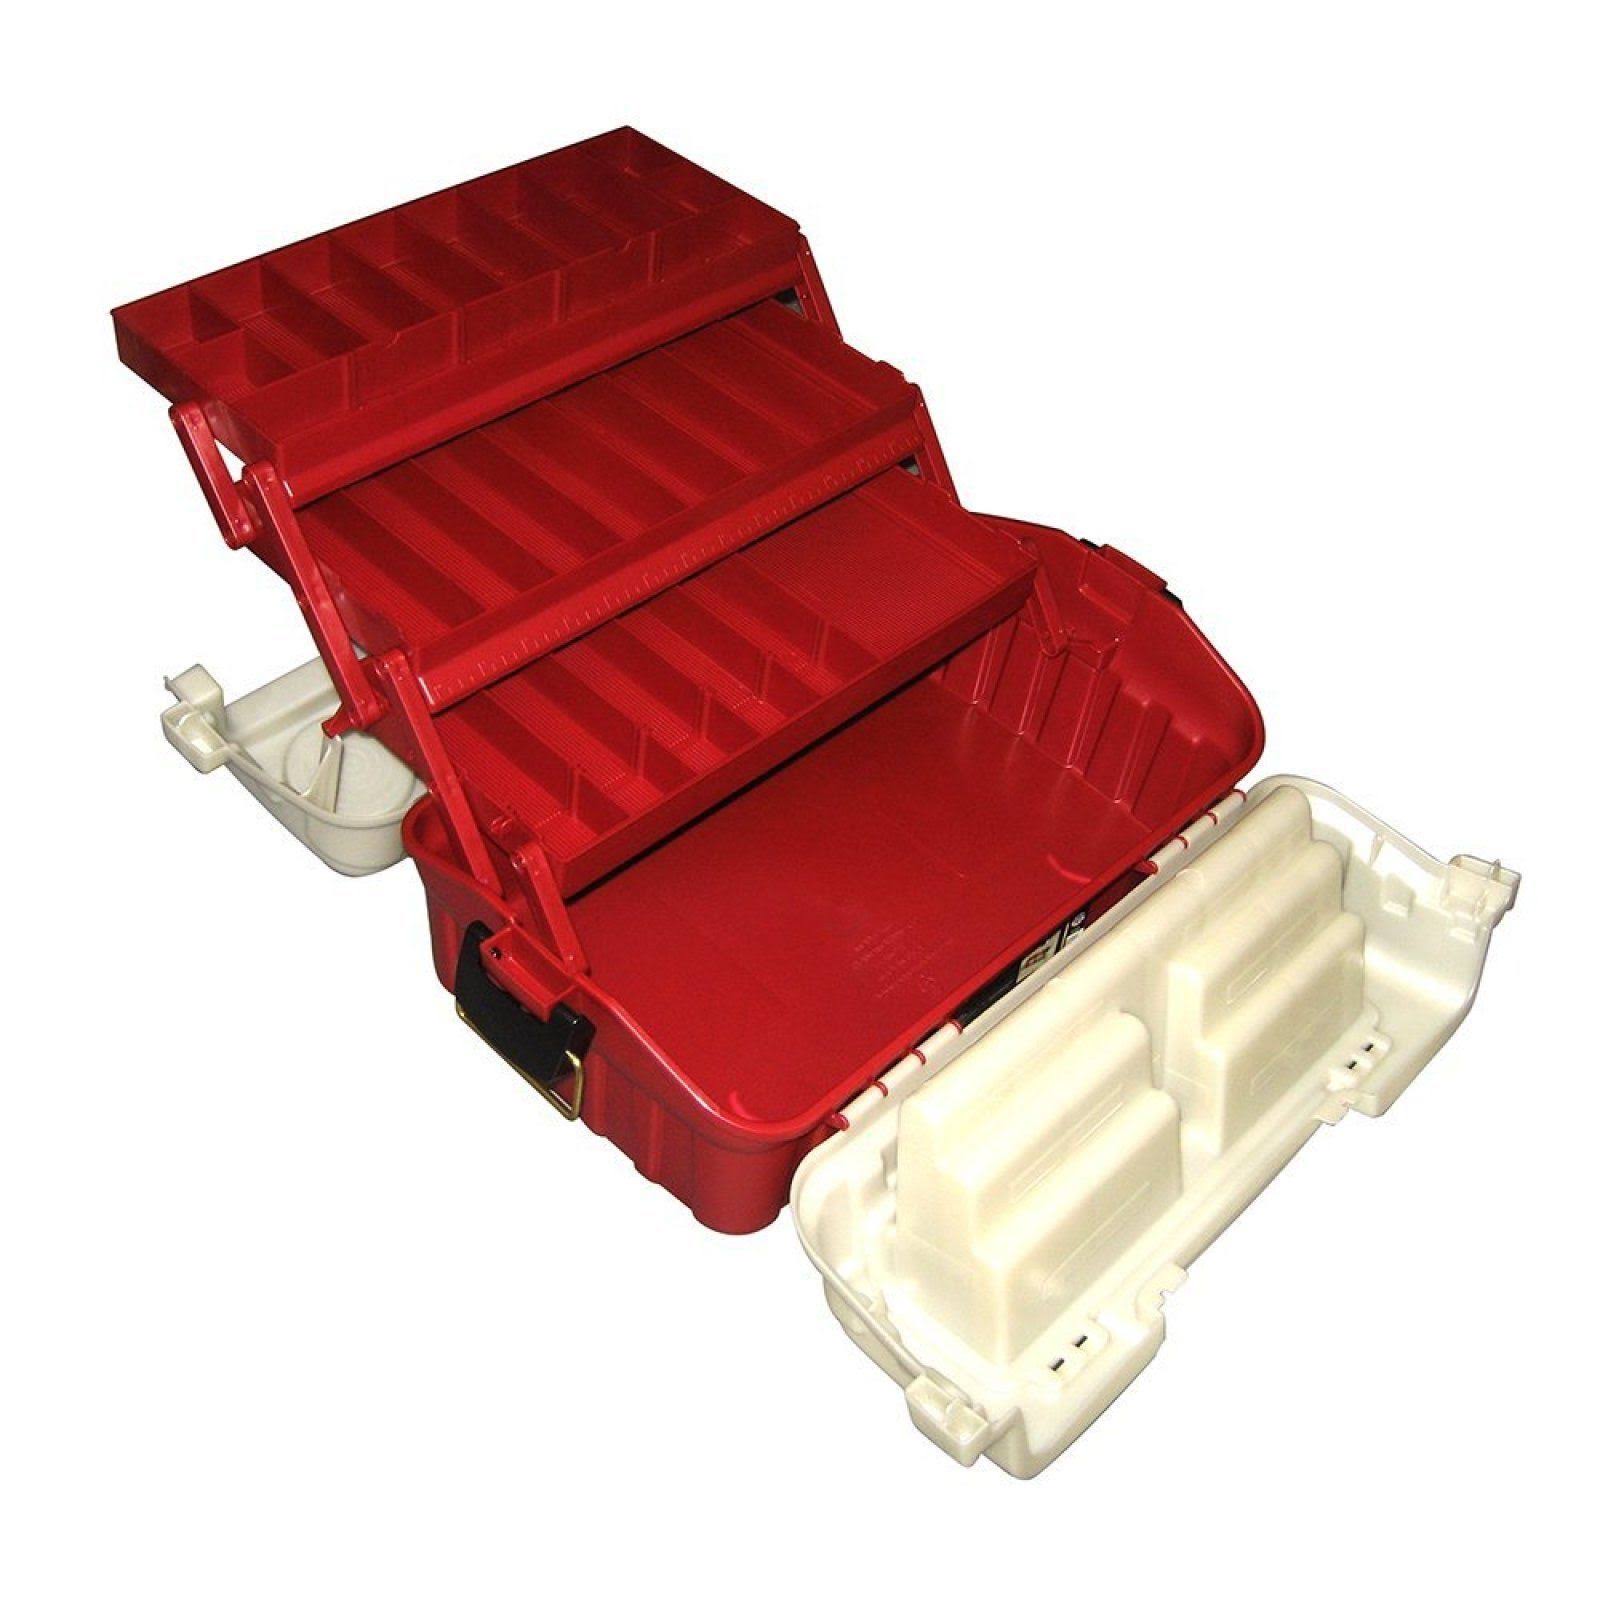 Plano - Flipsider Three-Tray Tackle Box